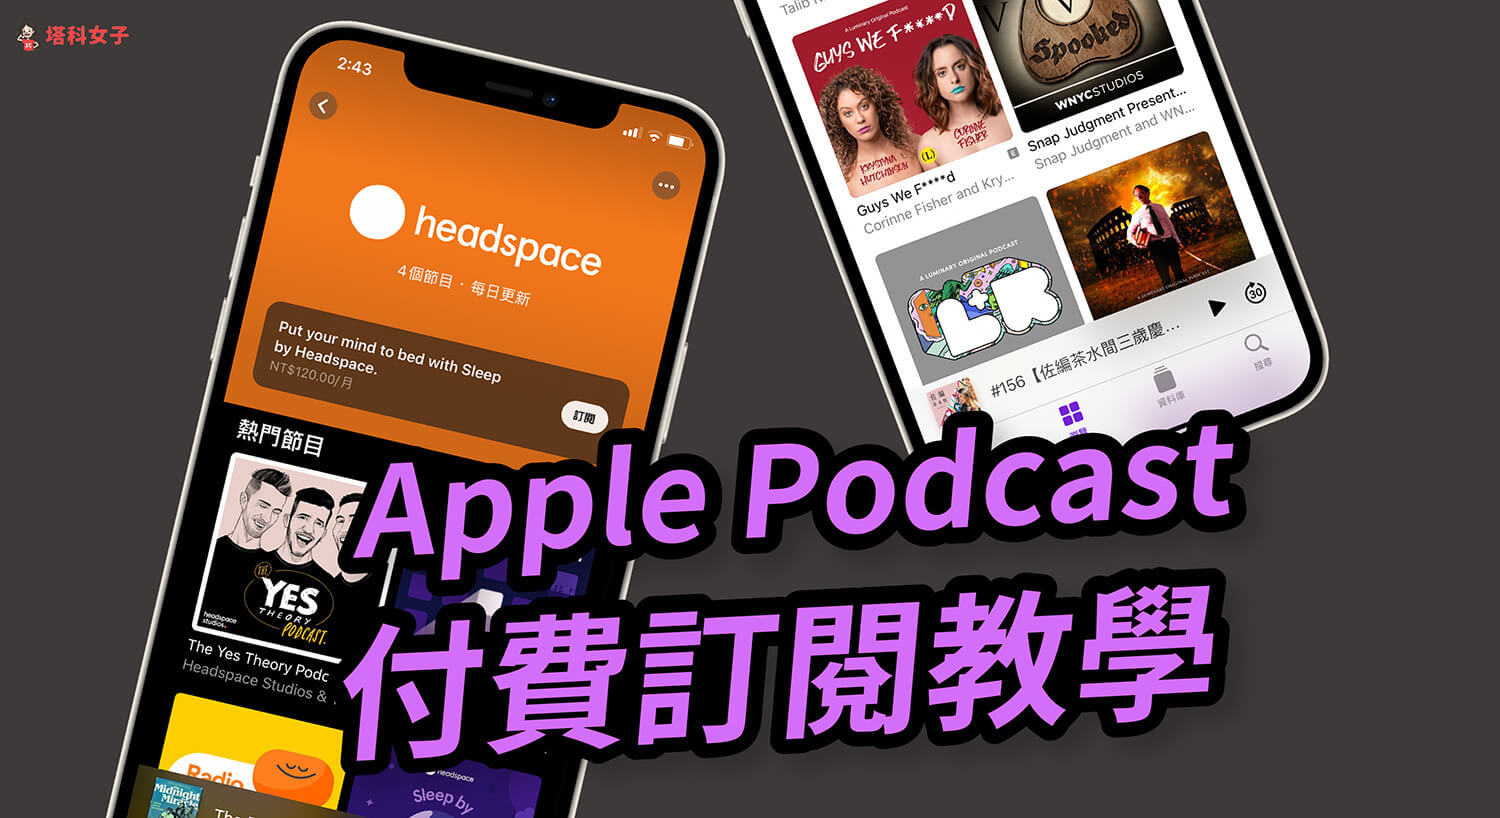 Apple Podcast 如何付費訂閱 Podcast 節目或頻道？如何取消訂閱？